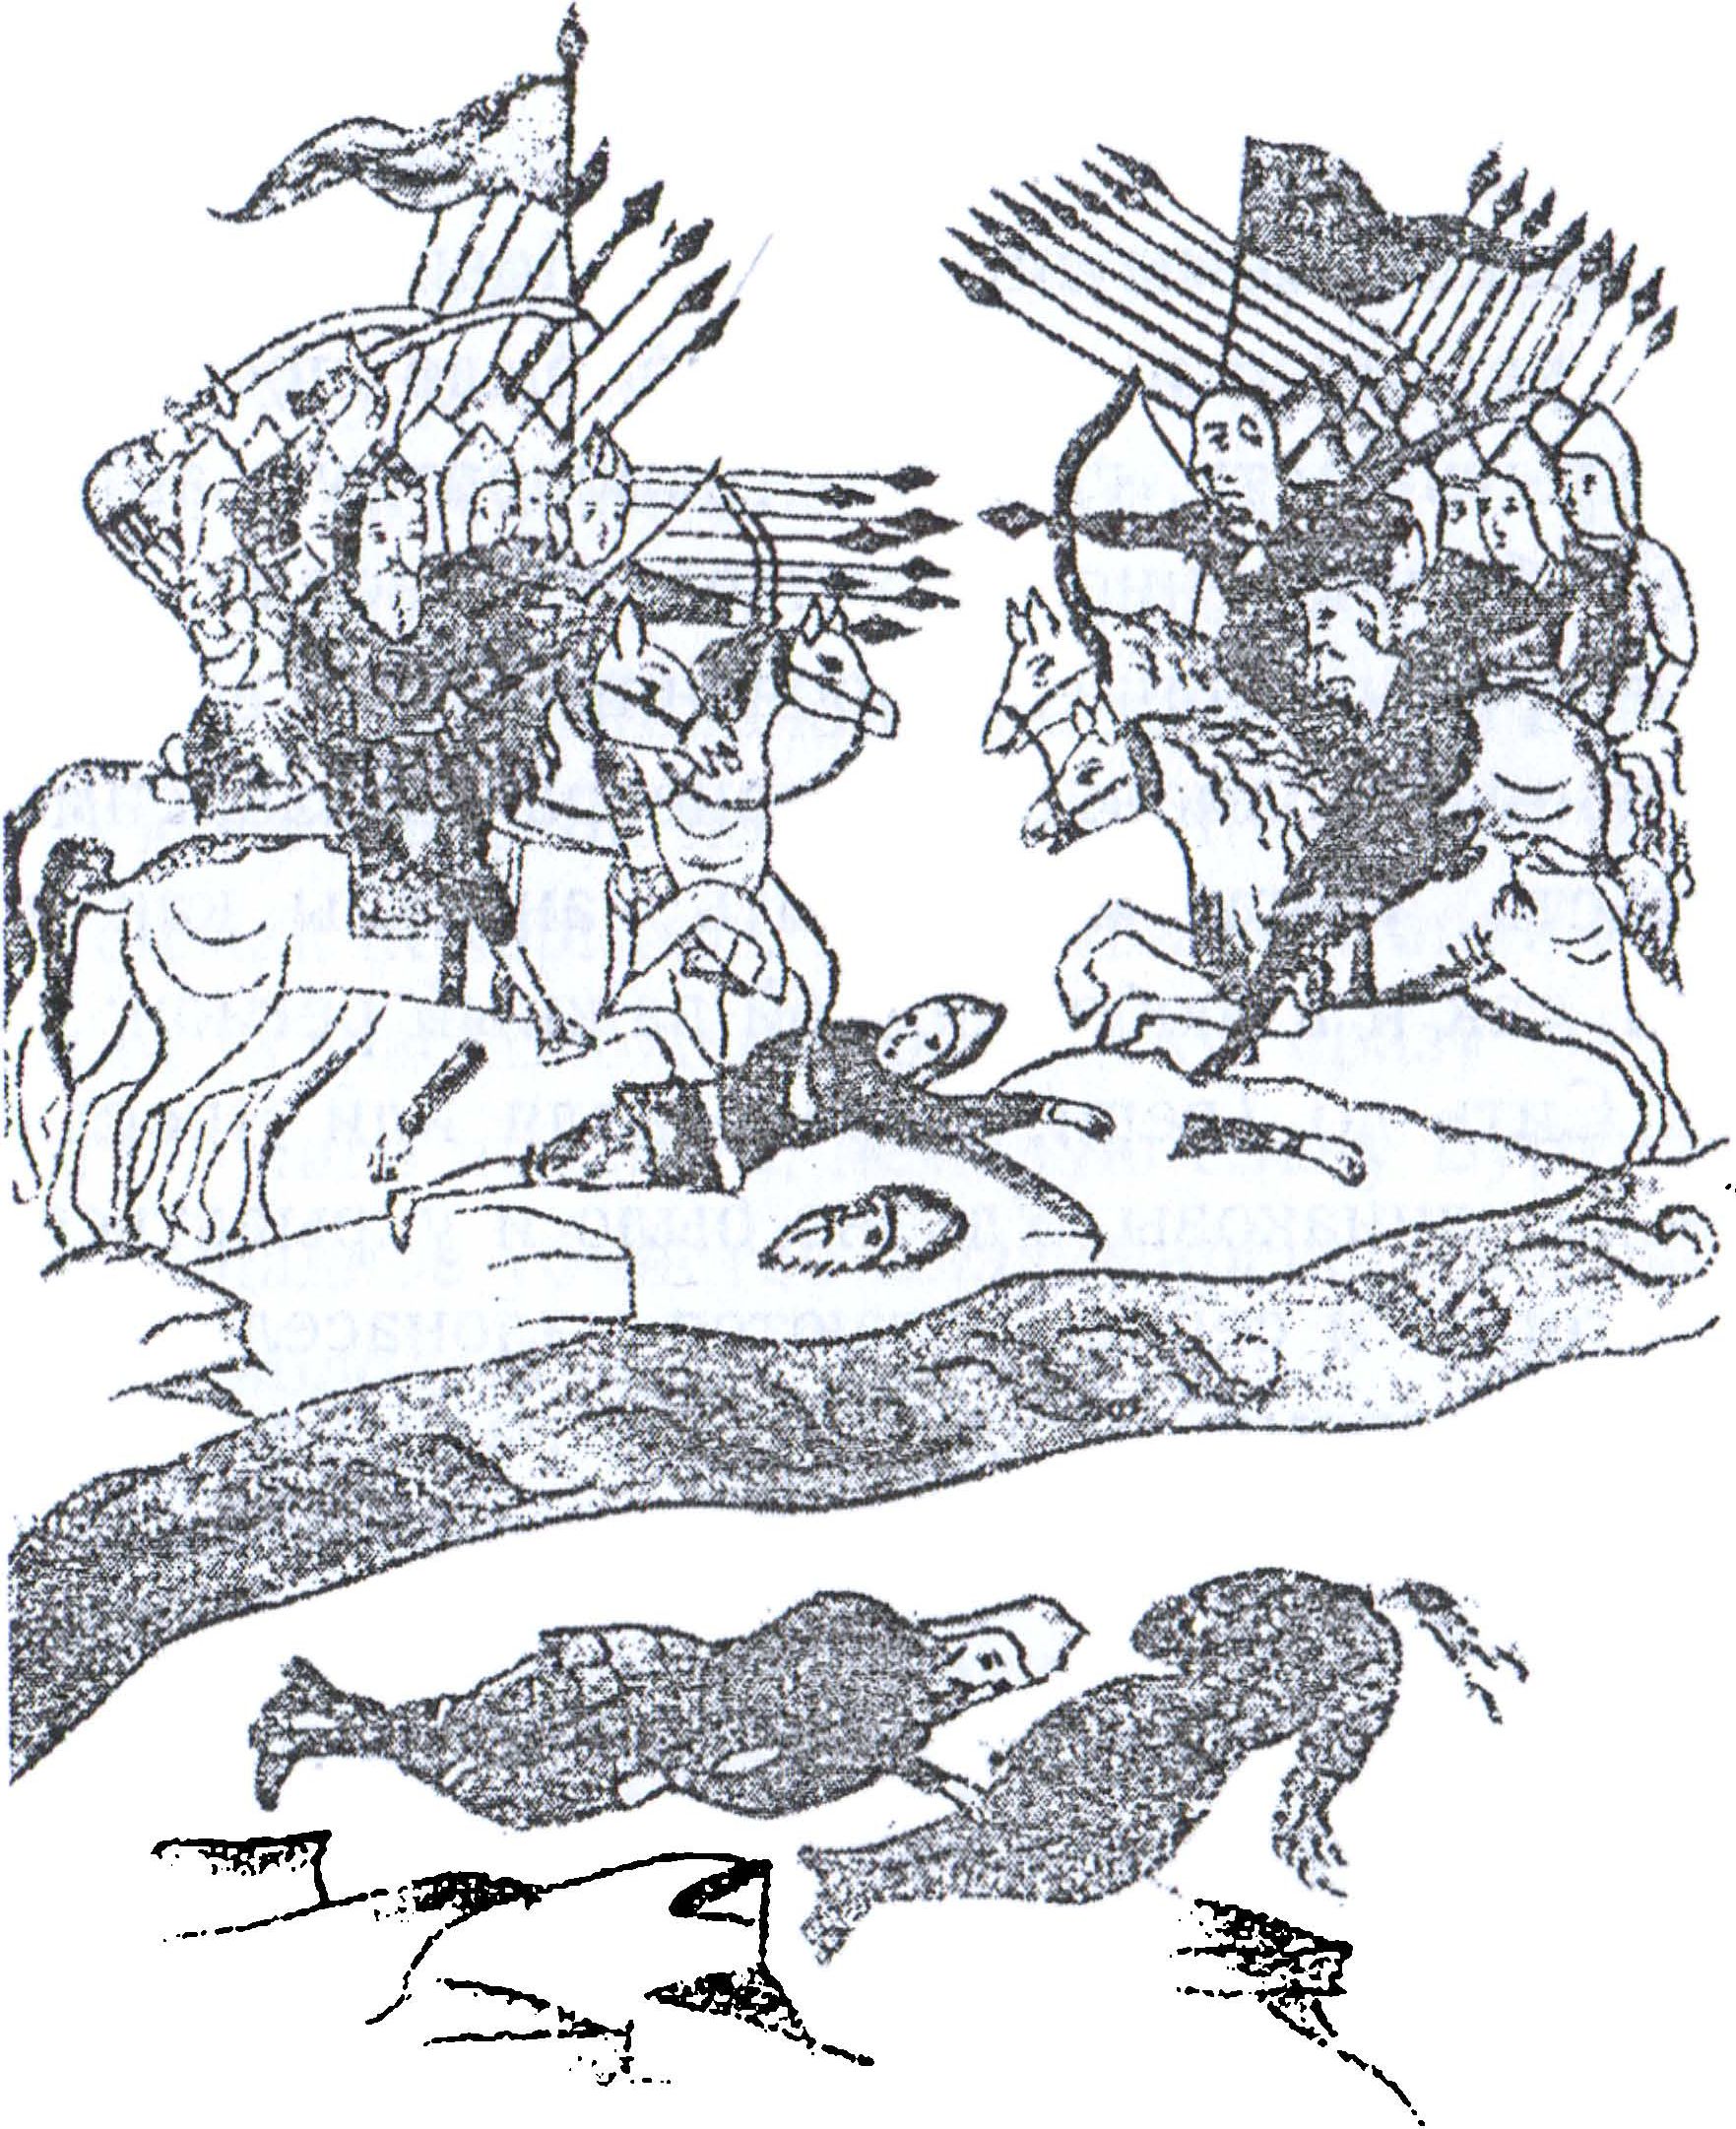 На реке сити русское войско разбило монголов. 1238 Г. - битва на реке Сити. Битва на реке сить — 1238 г..